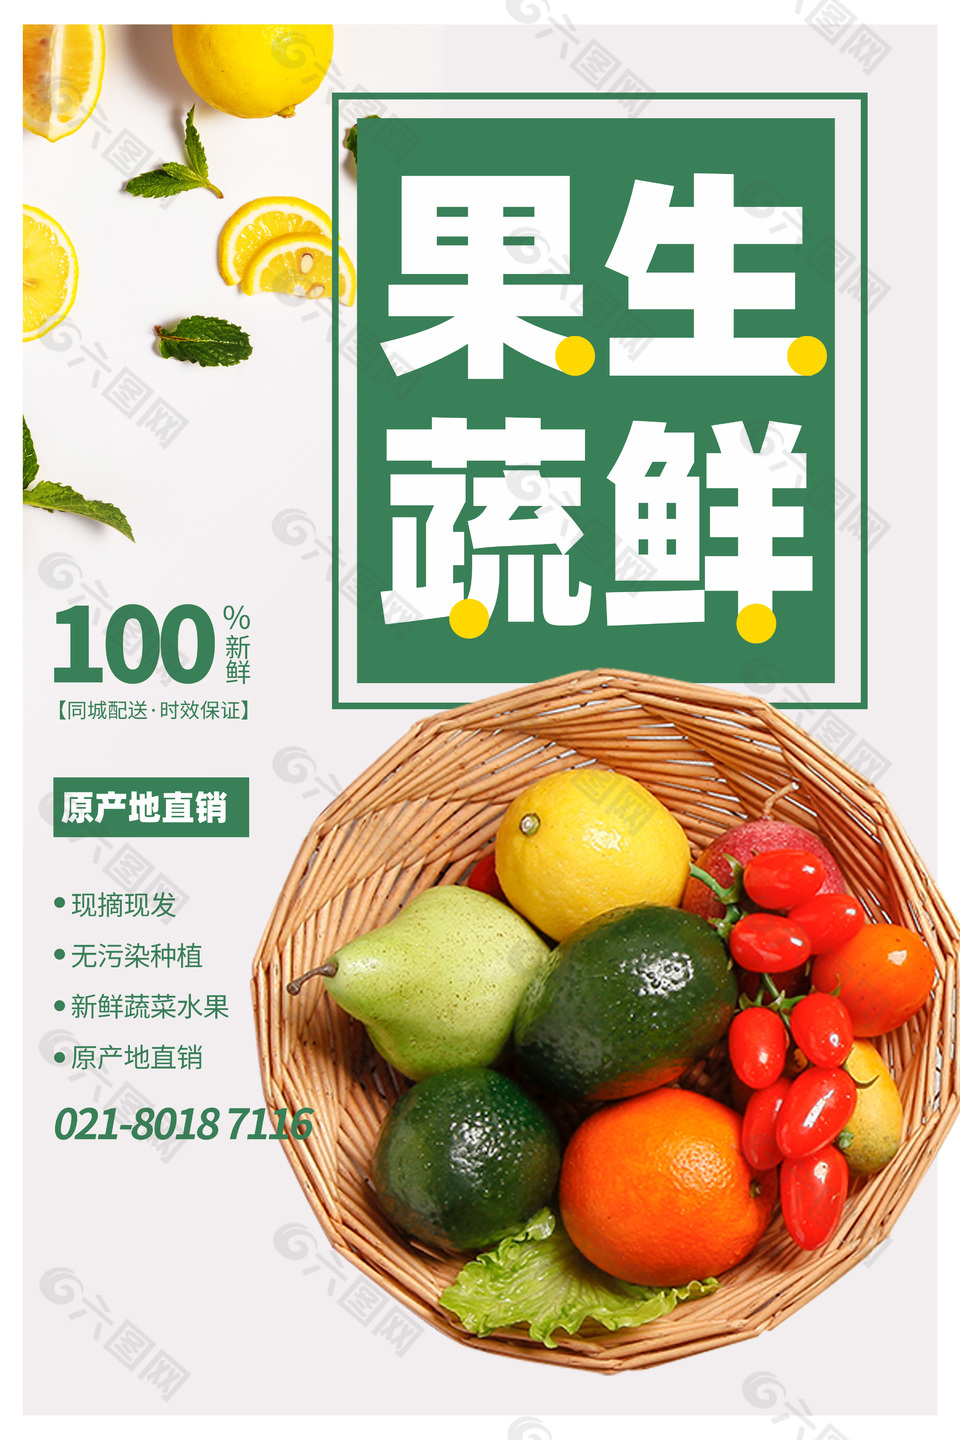 果蔬生鲜白色主题系列创意海报设计